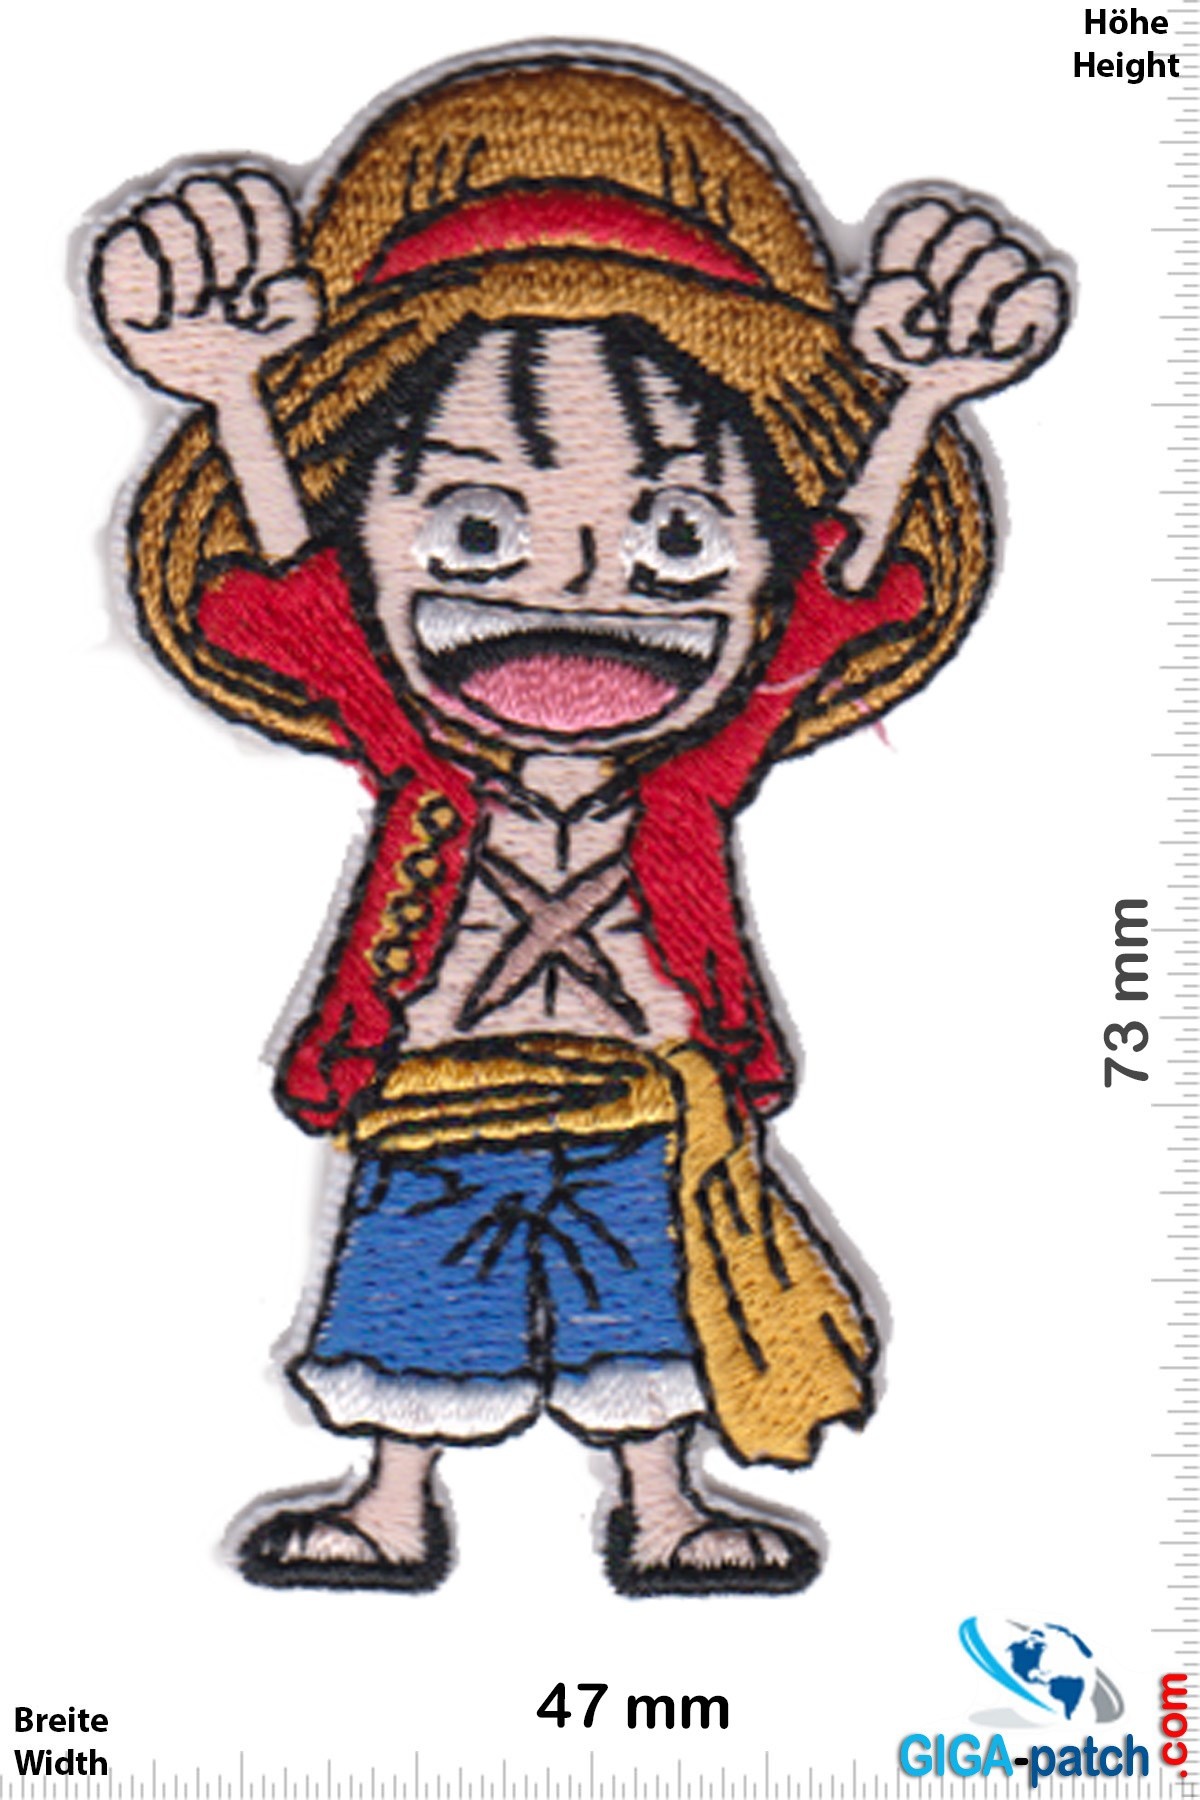 One Piece -Patch - Parche - Patch Llaveros Pegatinas -  -  Mayor Patch Tienda de todo el mundo - Patch Llaveros Pegatinas